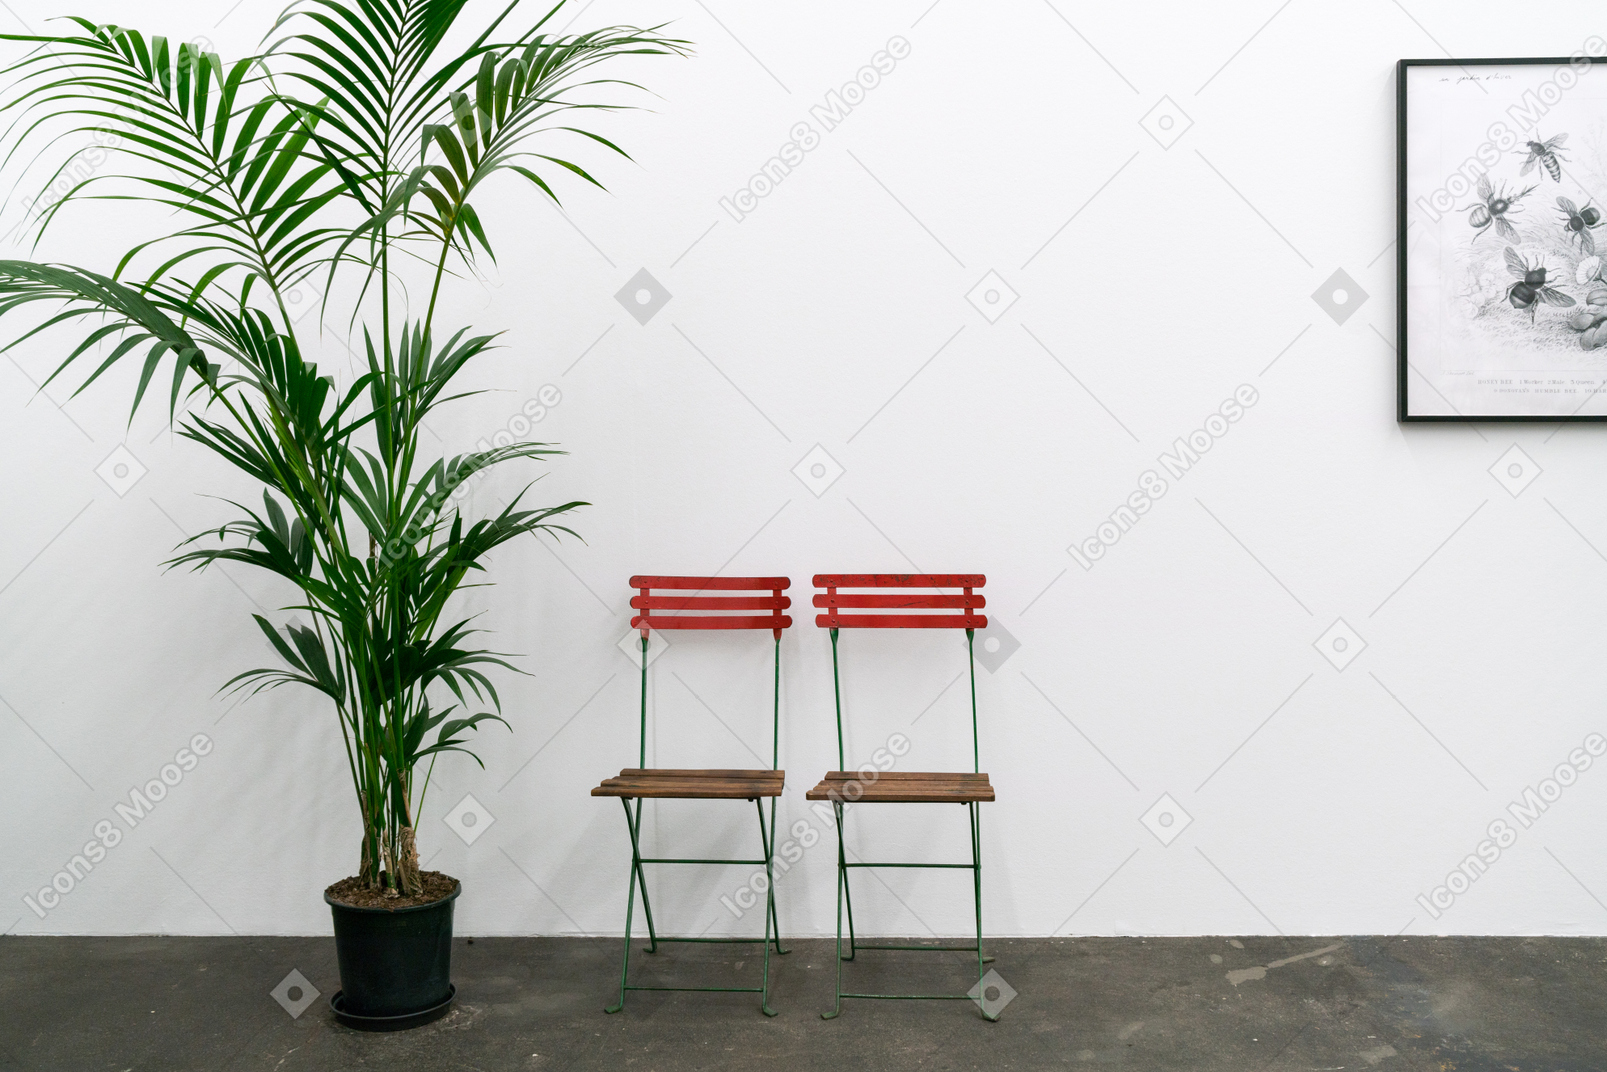 Zwei stühle, eine pflanze im topf und ein gerahmtes bild an der wand